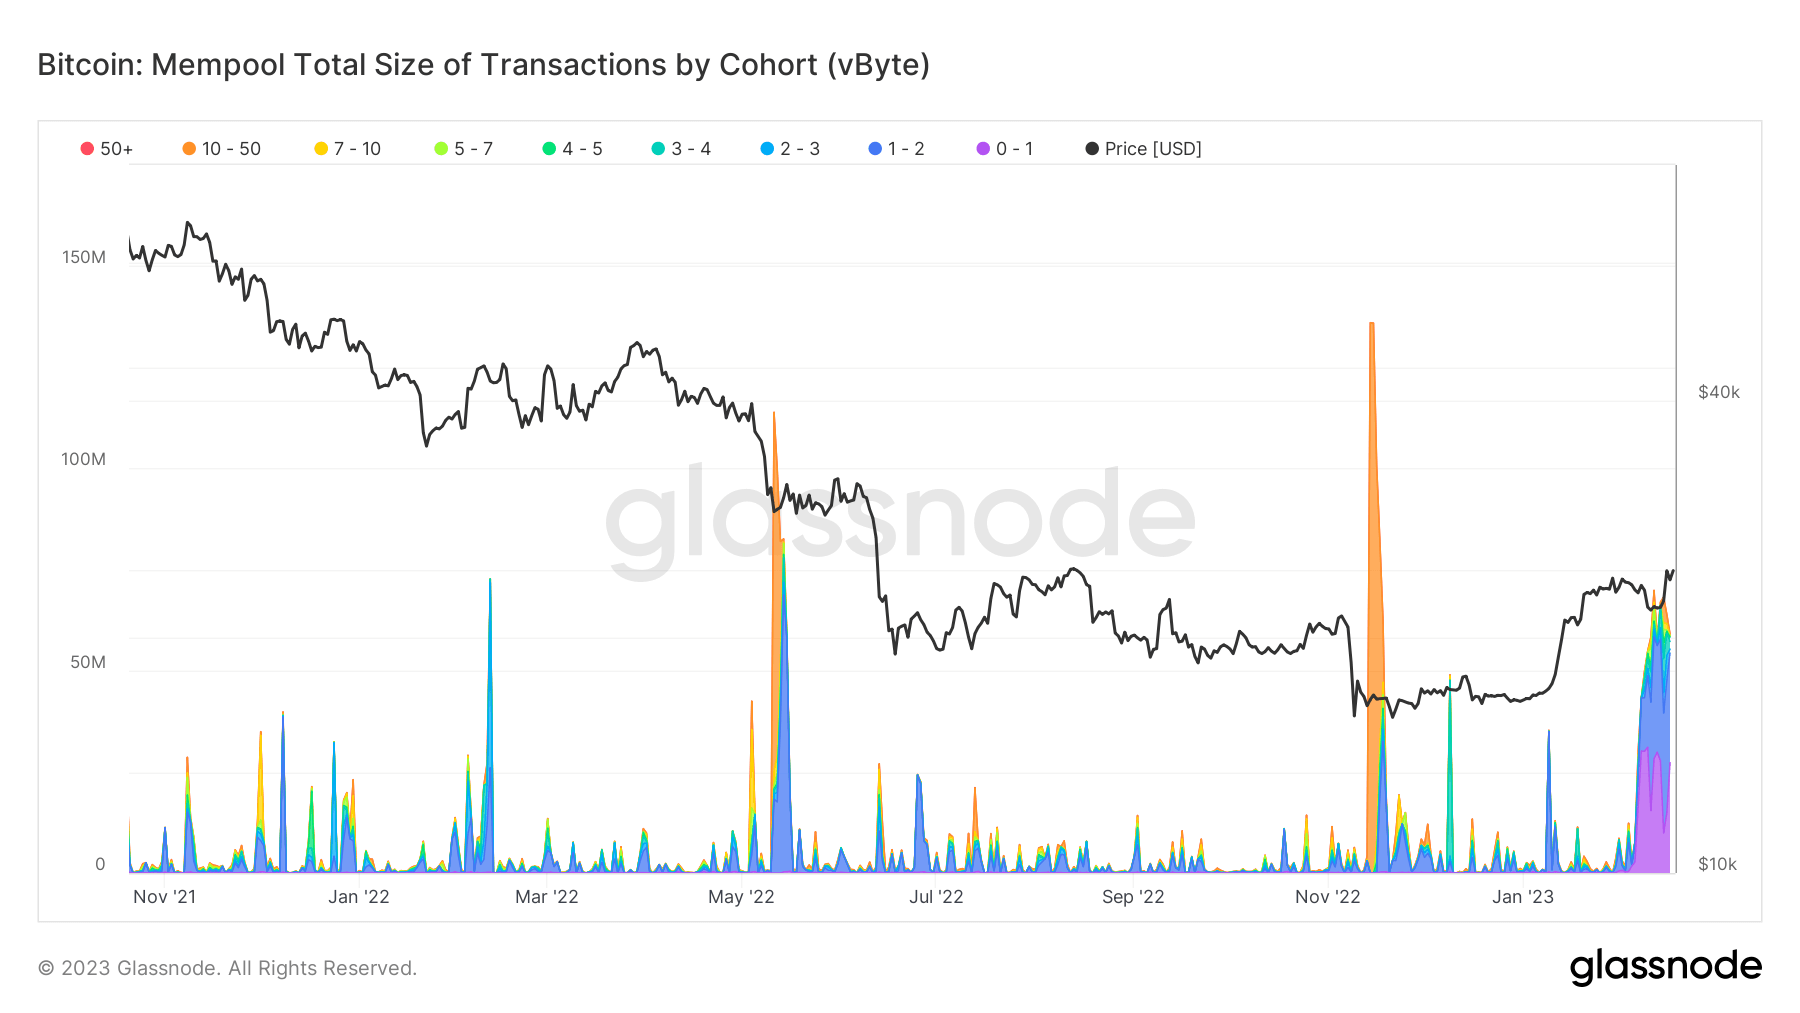 Taille totale des transactions Bitcoin mempool par cohorte